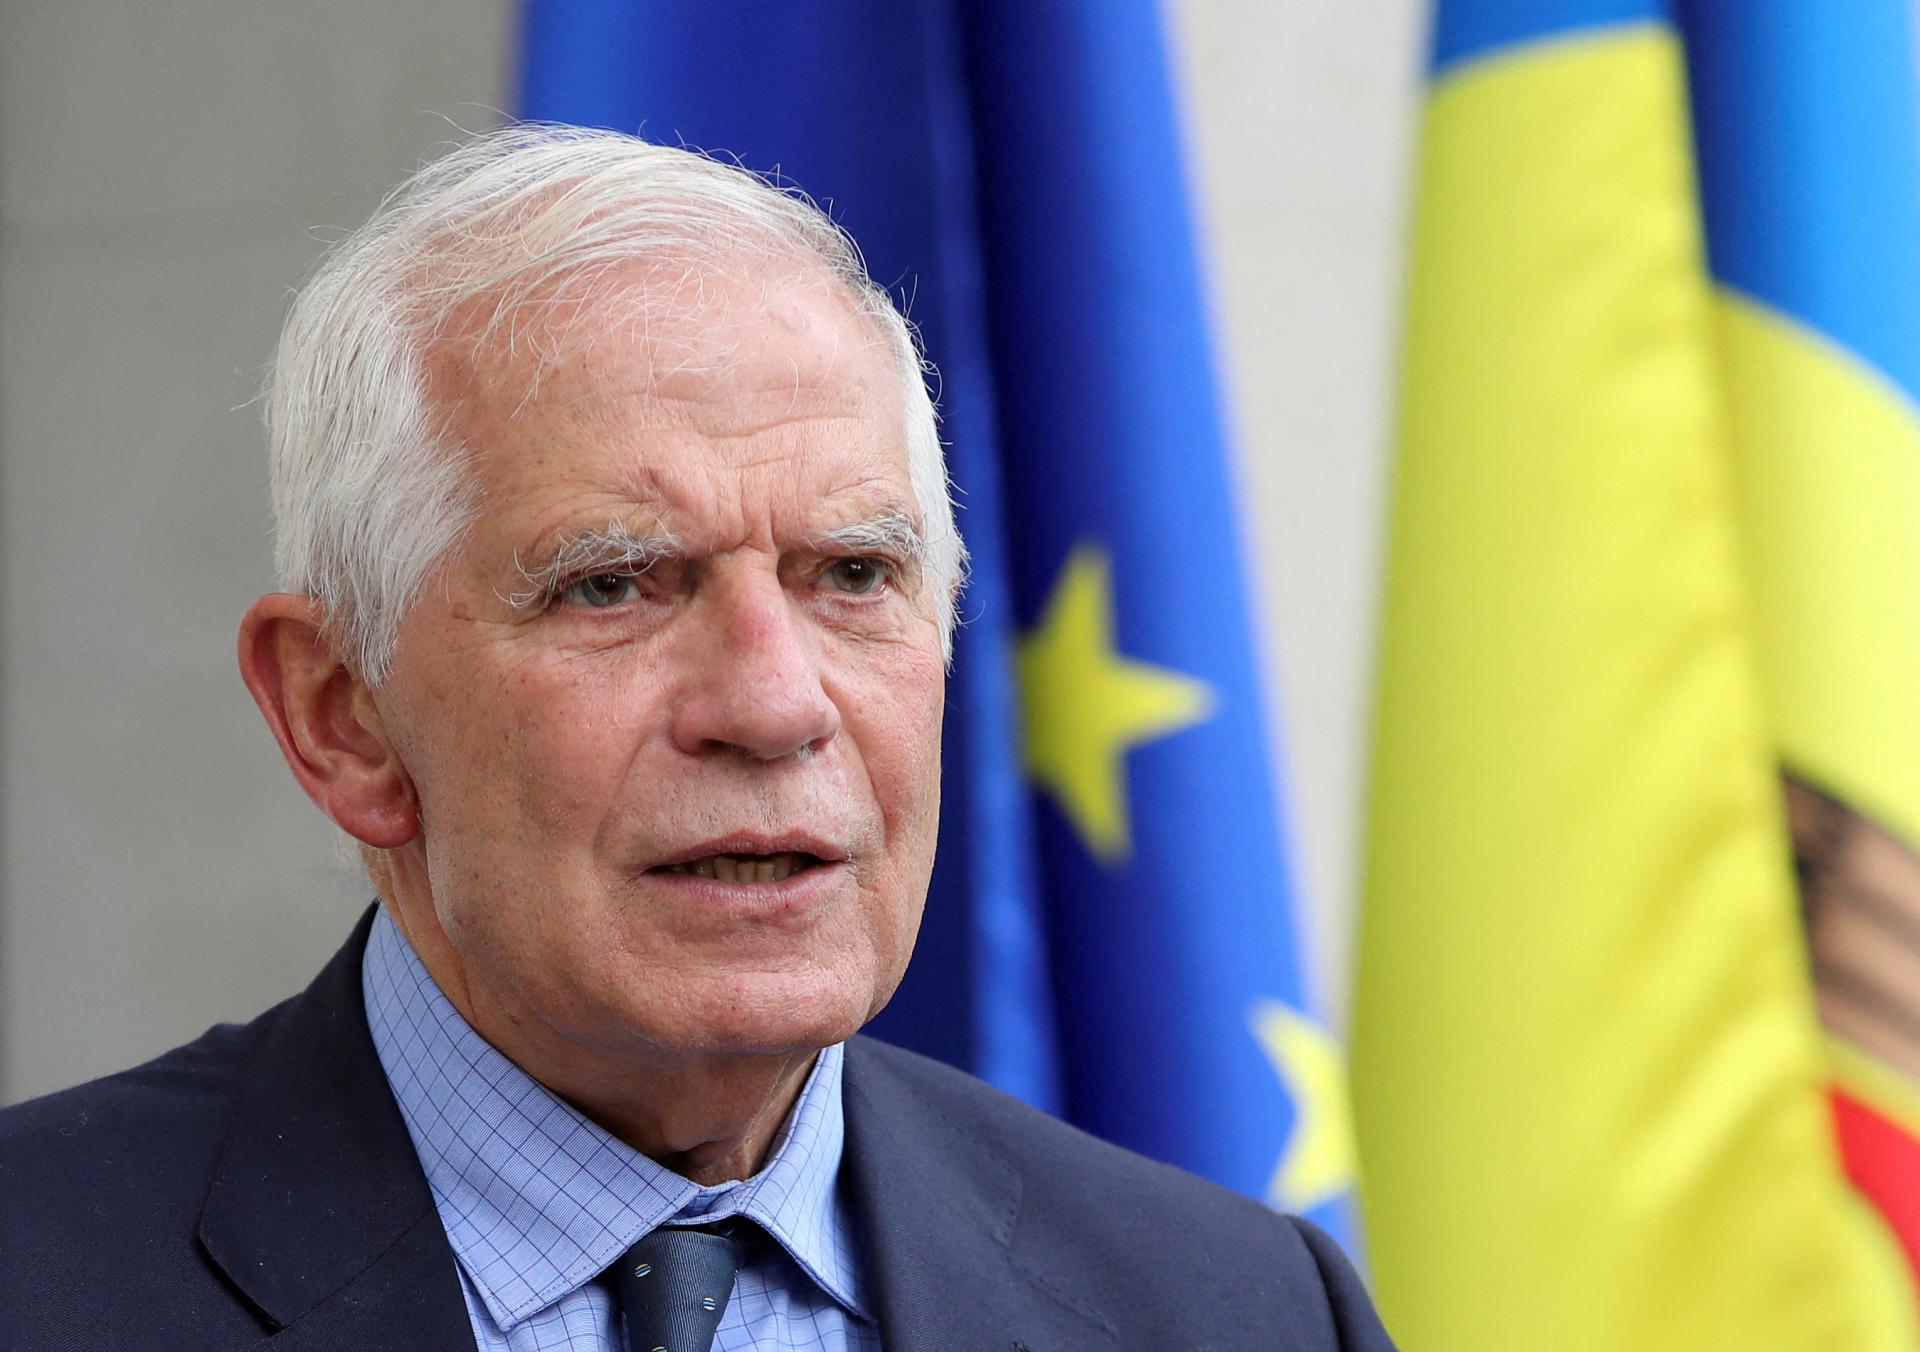 Slabý Putin je ešte väčšou hrozbou, vyhlásil šéf európskej diplomacie Borrell